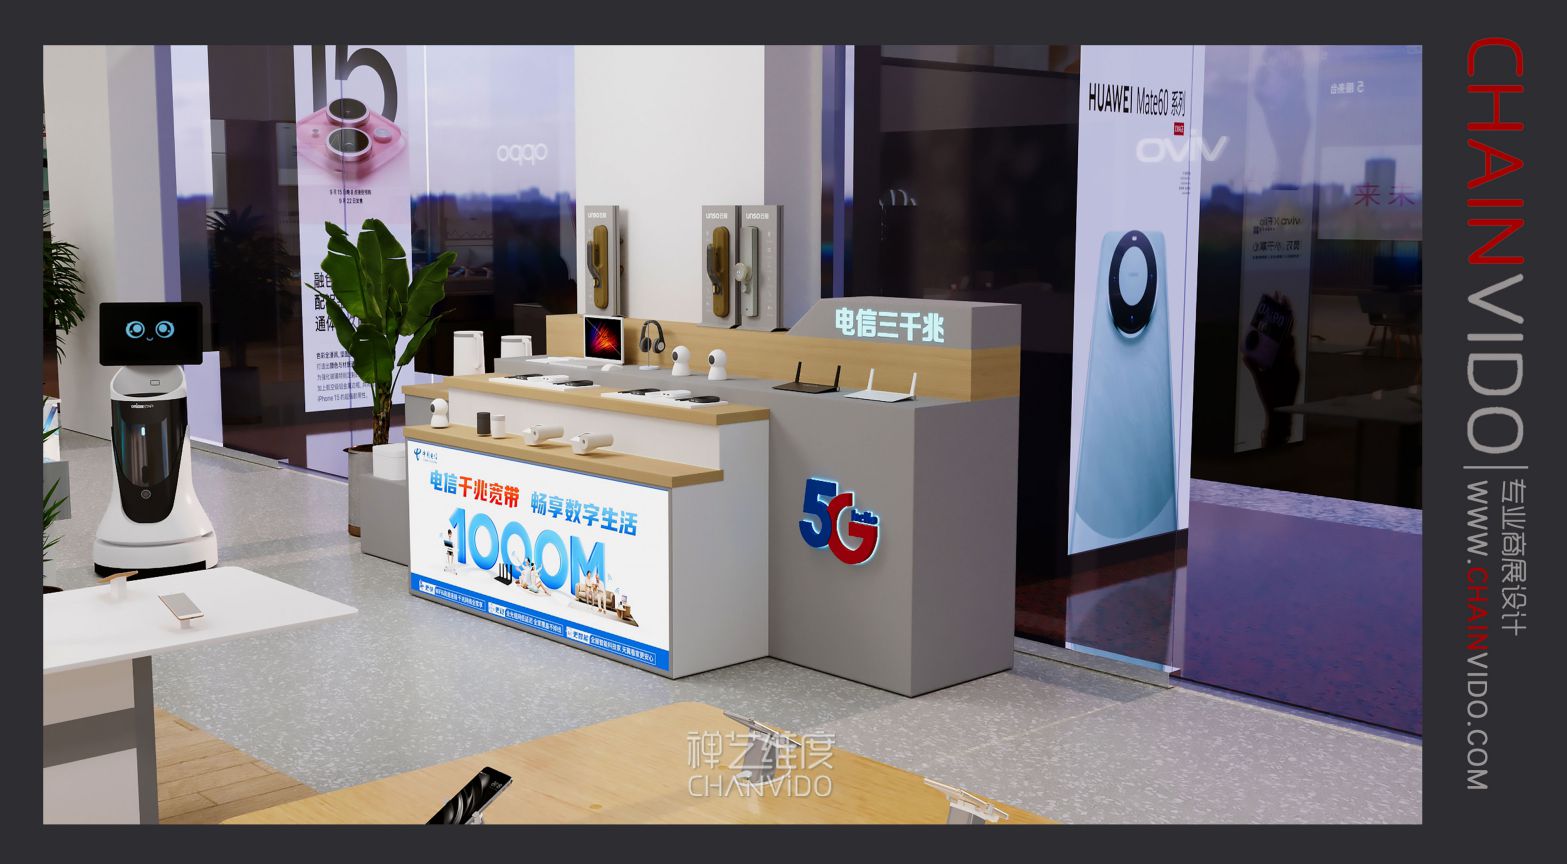 【禅艺维度建筑设计工作室】| 中国电信 六安分公司